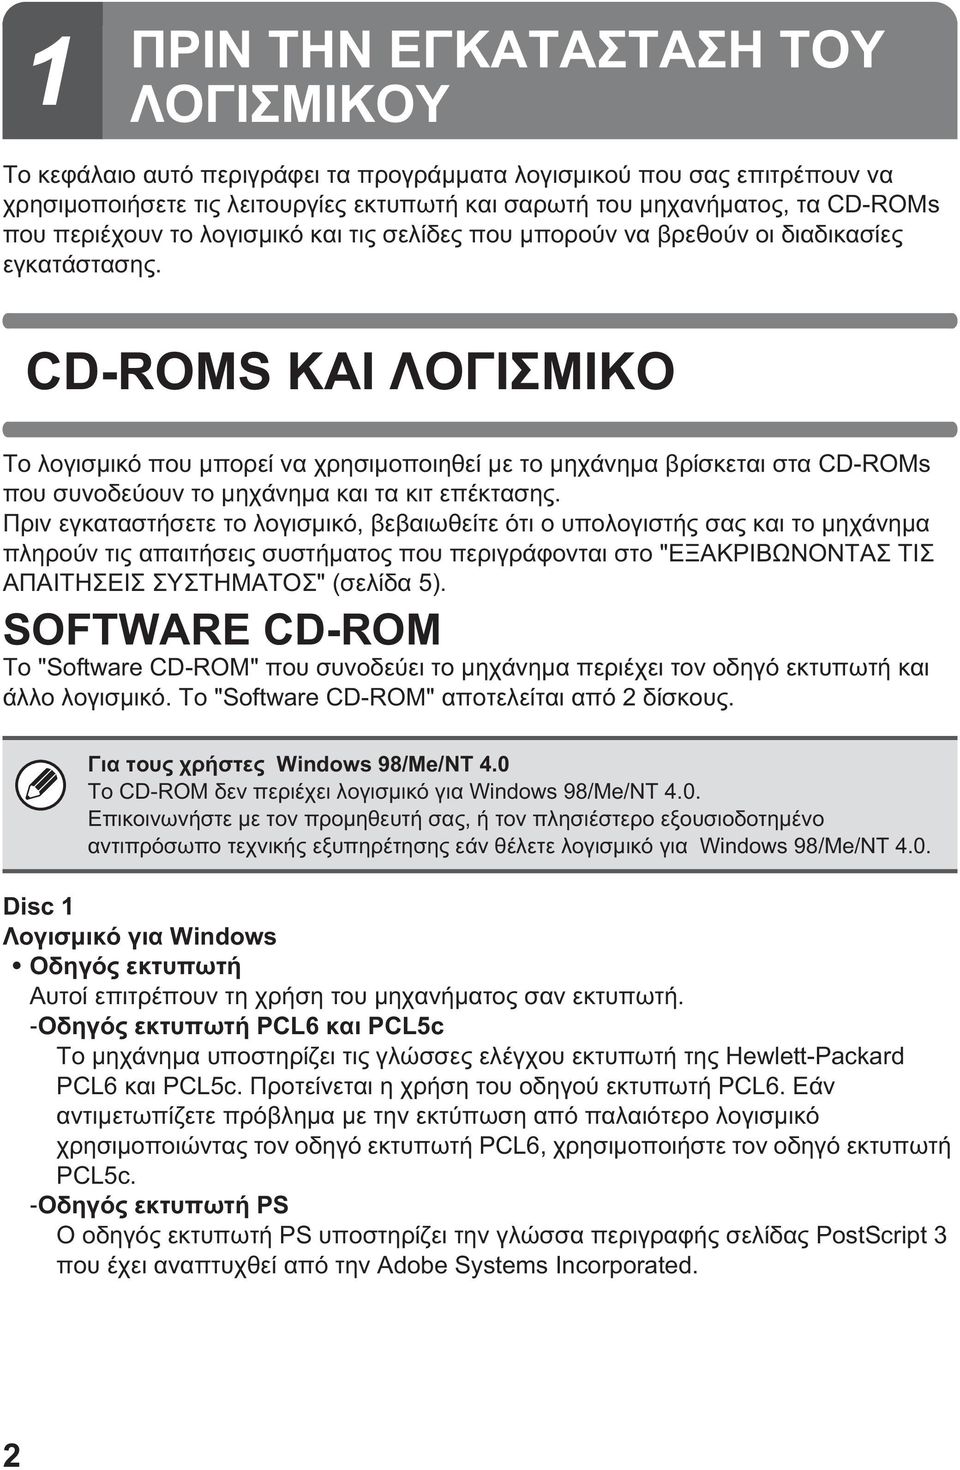 Windows 98/Me/NT 4.0 CD-ROM Windows 98/Me/NT 4.0., Windows 98/Me/NT 4.0. Disc 1 Windows.